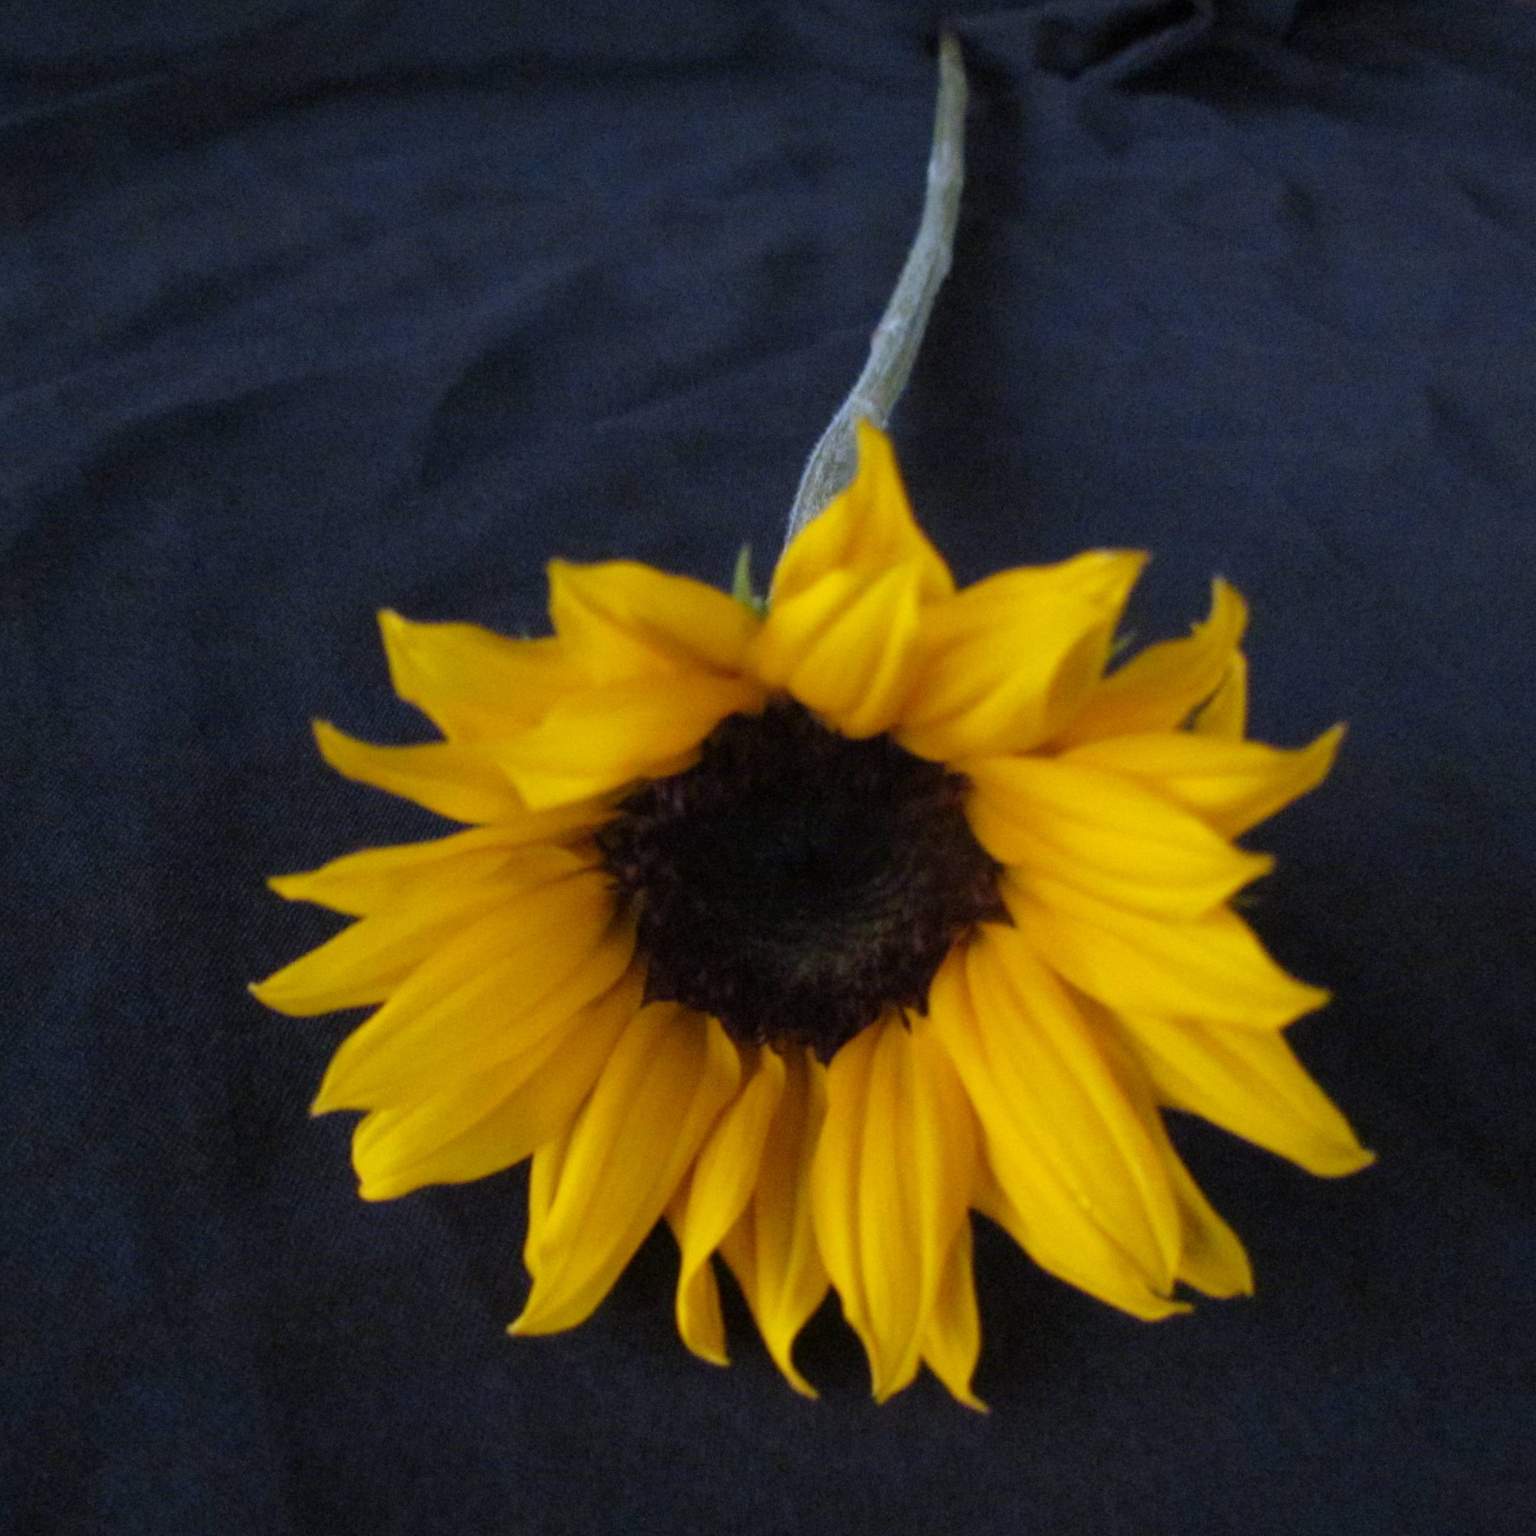 Helianthus (Sunflower)